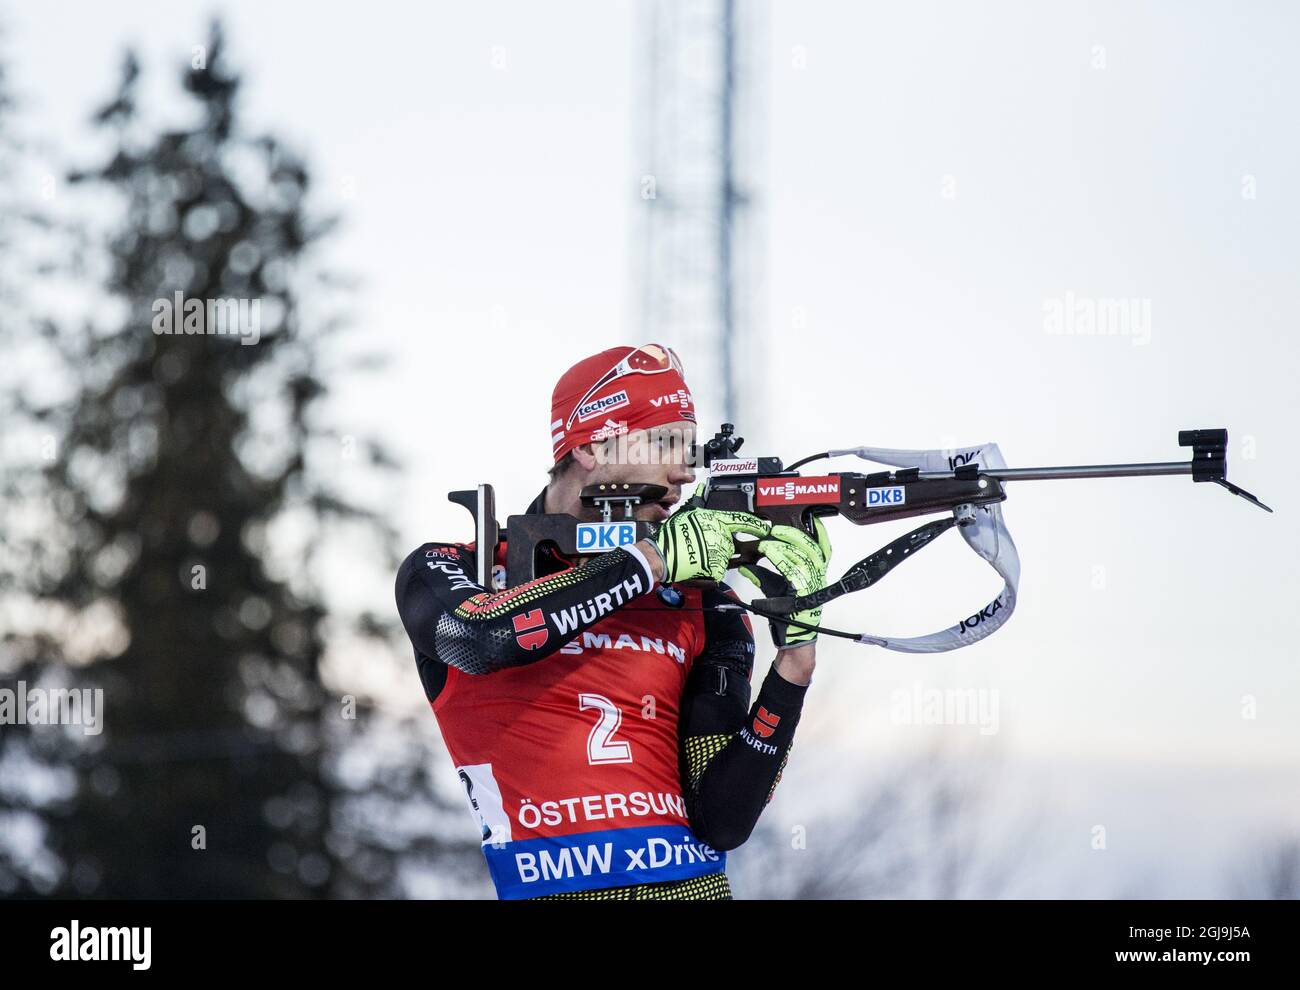 Arnd Pheiffer di Germania in azione durante la gara di inseguimento maschile di 12,5 km alla IBU Biathlon World Cup di Ostersund, Svezia, il 6 dicembre 2015. Foto: Christine Olsson / TT / code 10430 Foto Stock